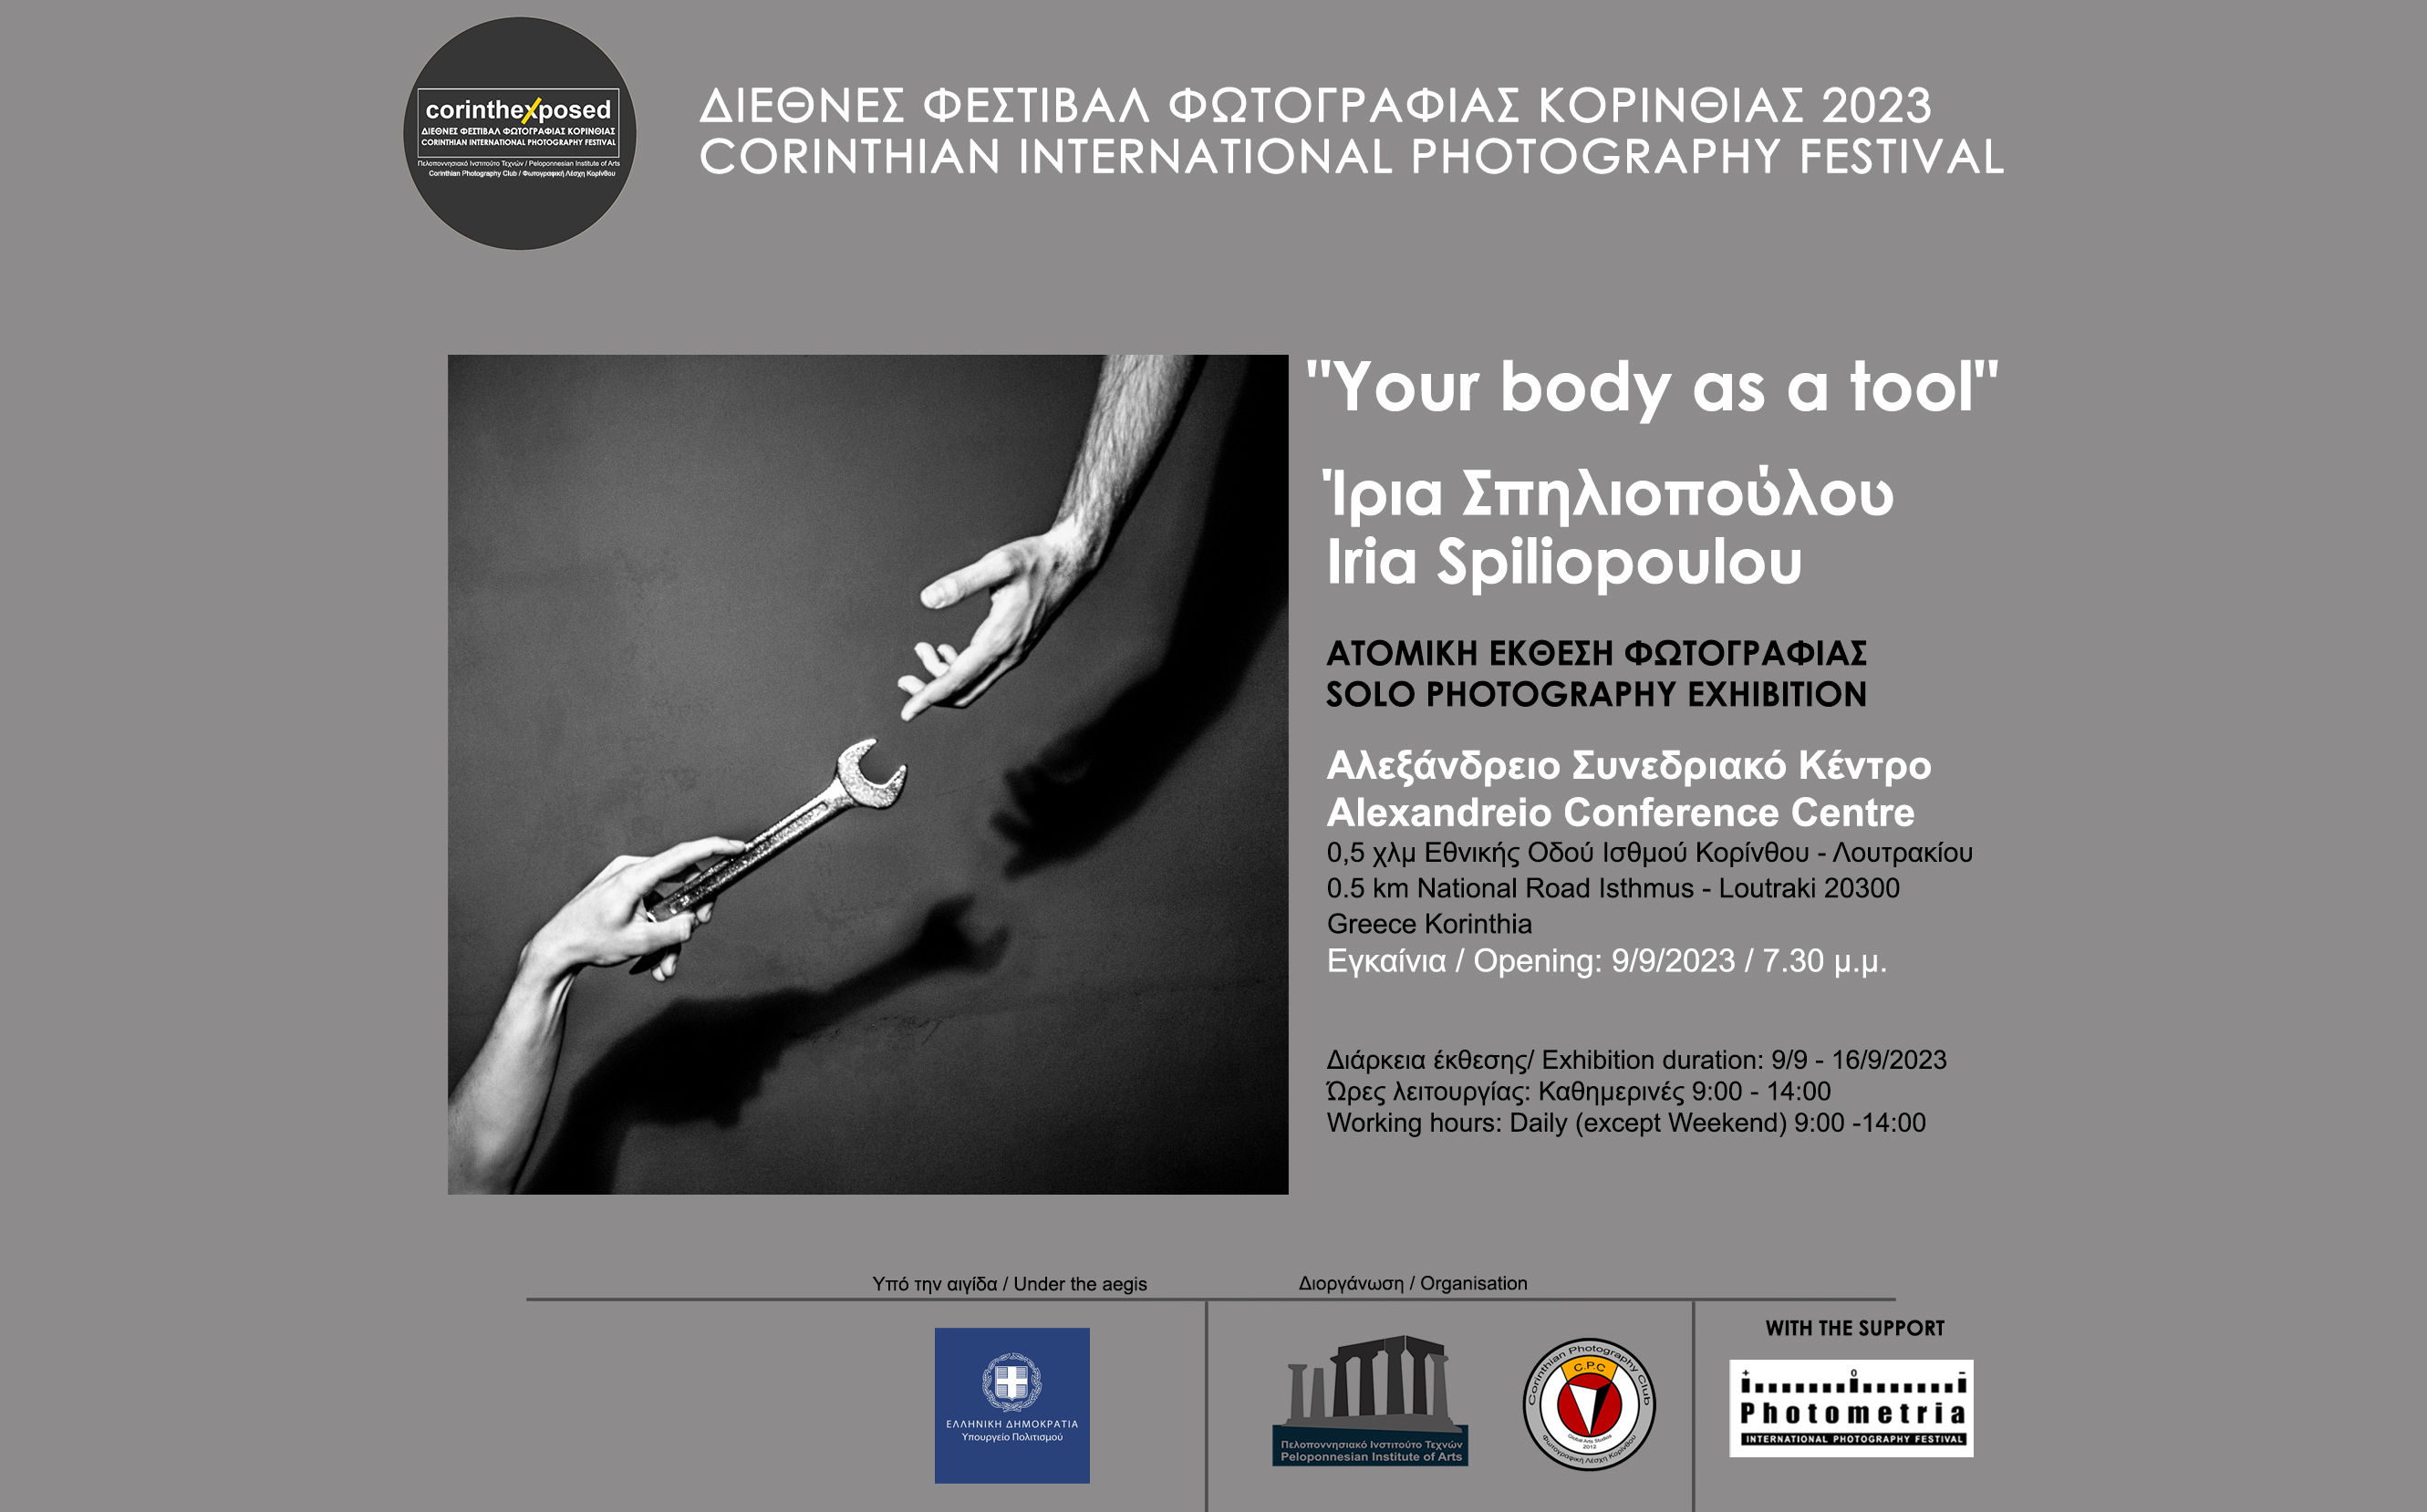 Ατομική έκθεση φωτογραφίας της Ίριας Σπηλιοπούλου με τίτλο "Your body as a tool"